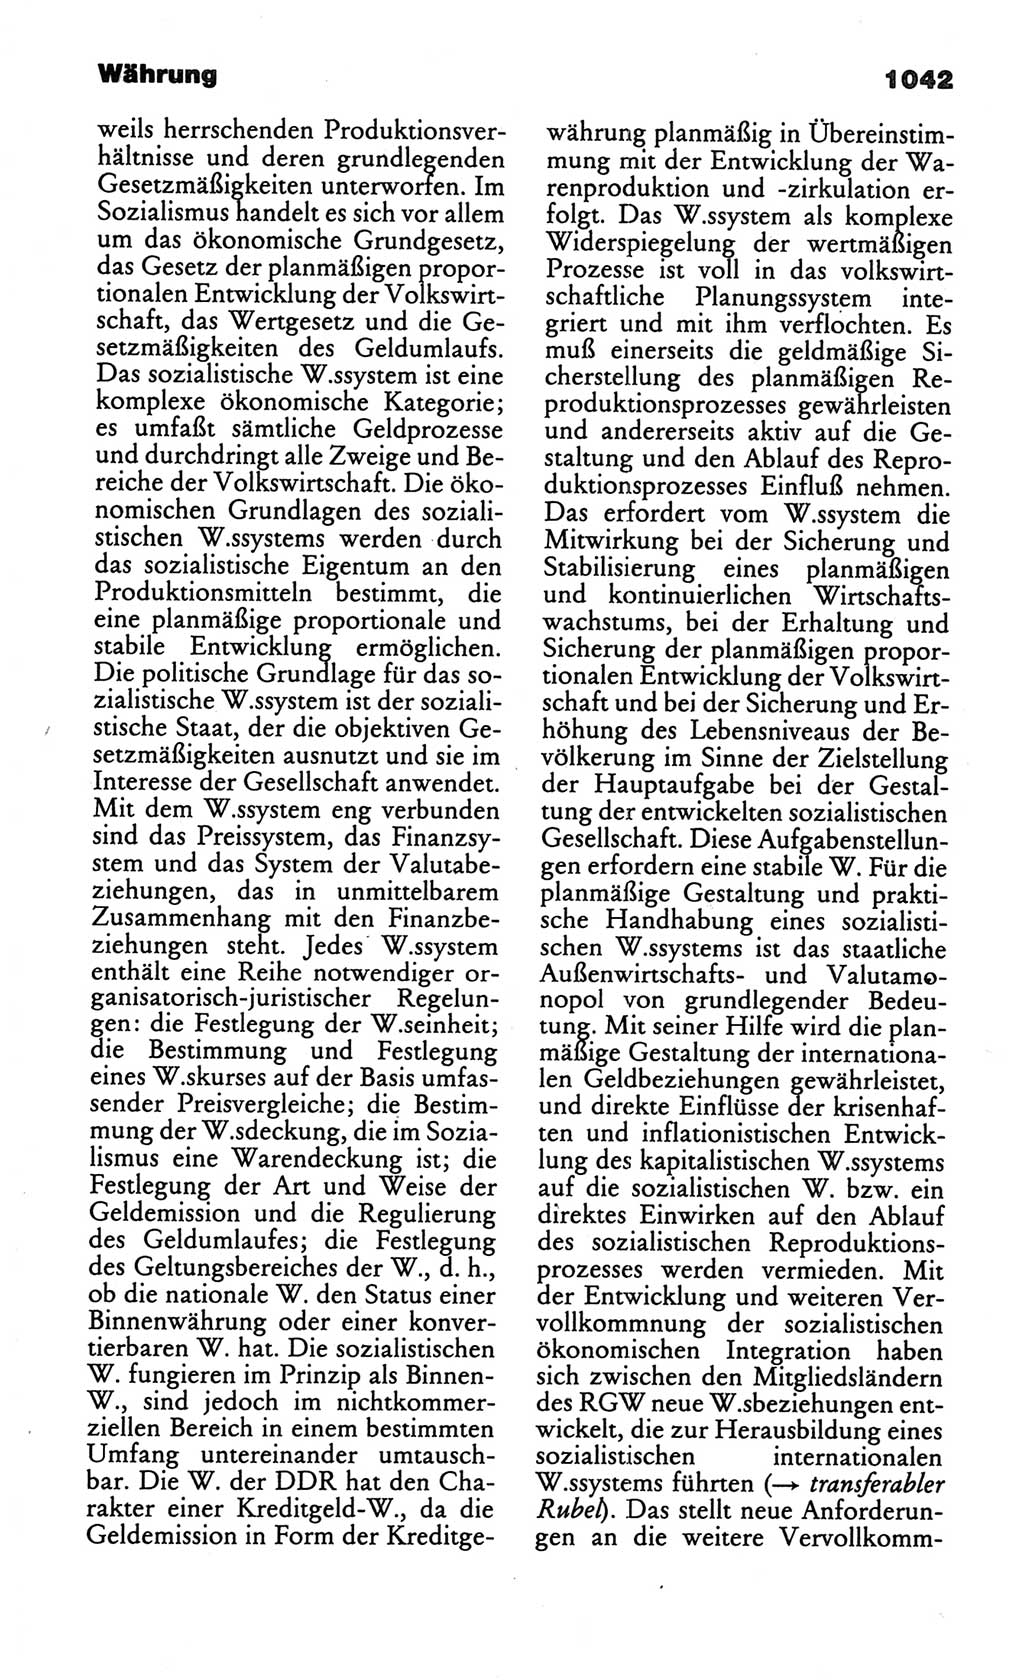 Kleines politisches Wörterbuch [Deutsche Demokratische Republik (DDR)] 1986, Seite 1042 (Kl. pol. Wb. DDR 1986, S. 1042)